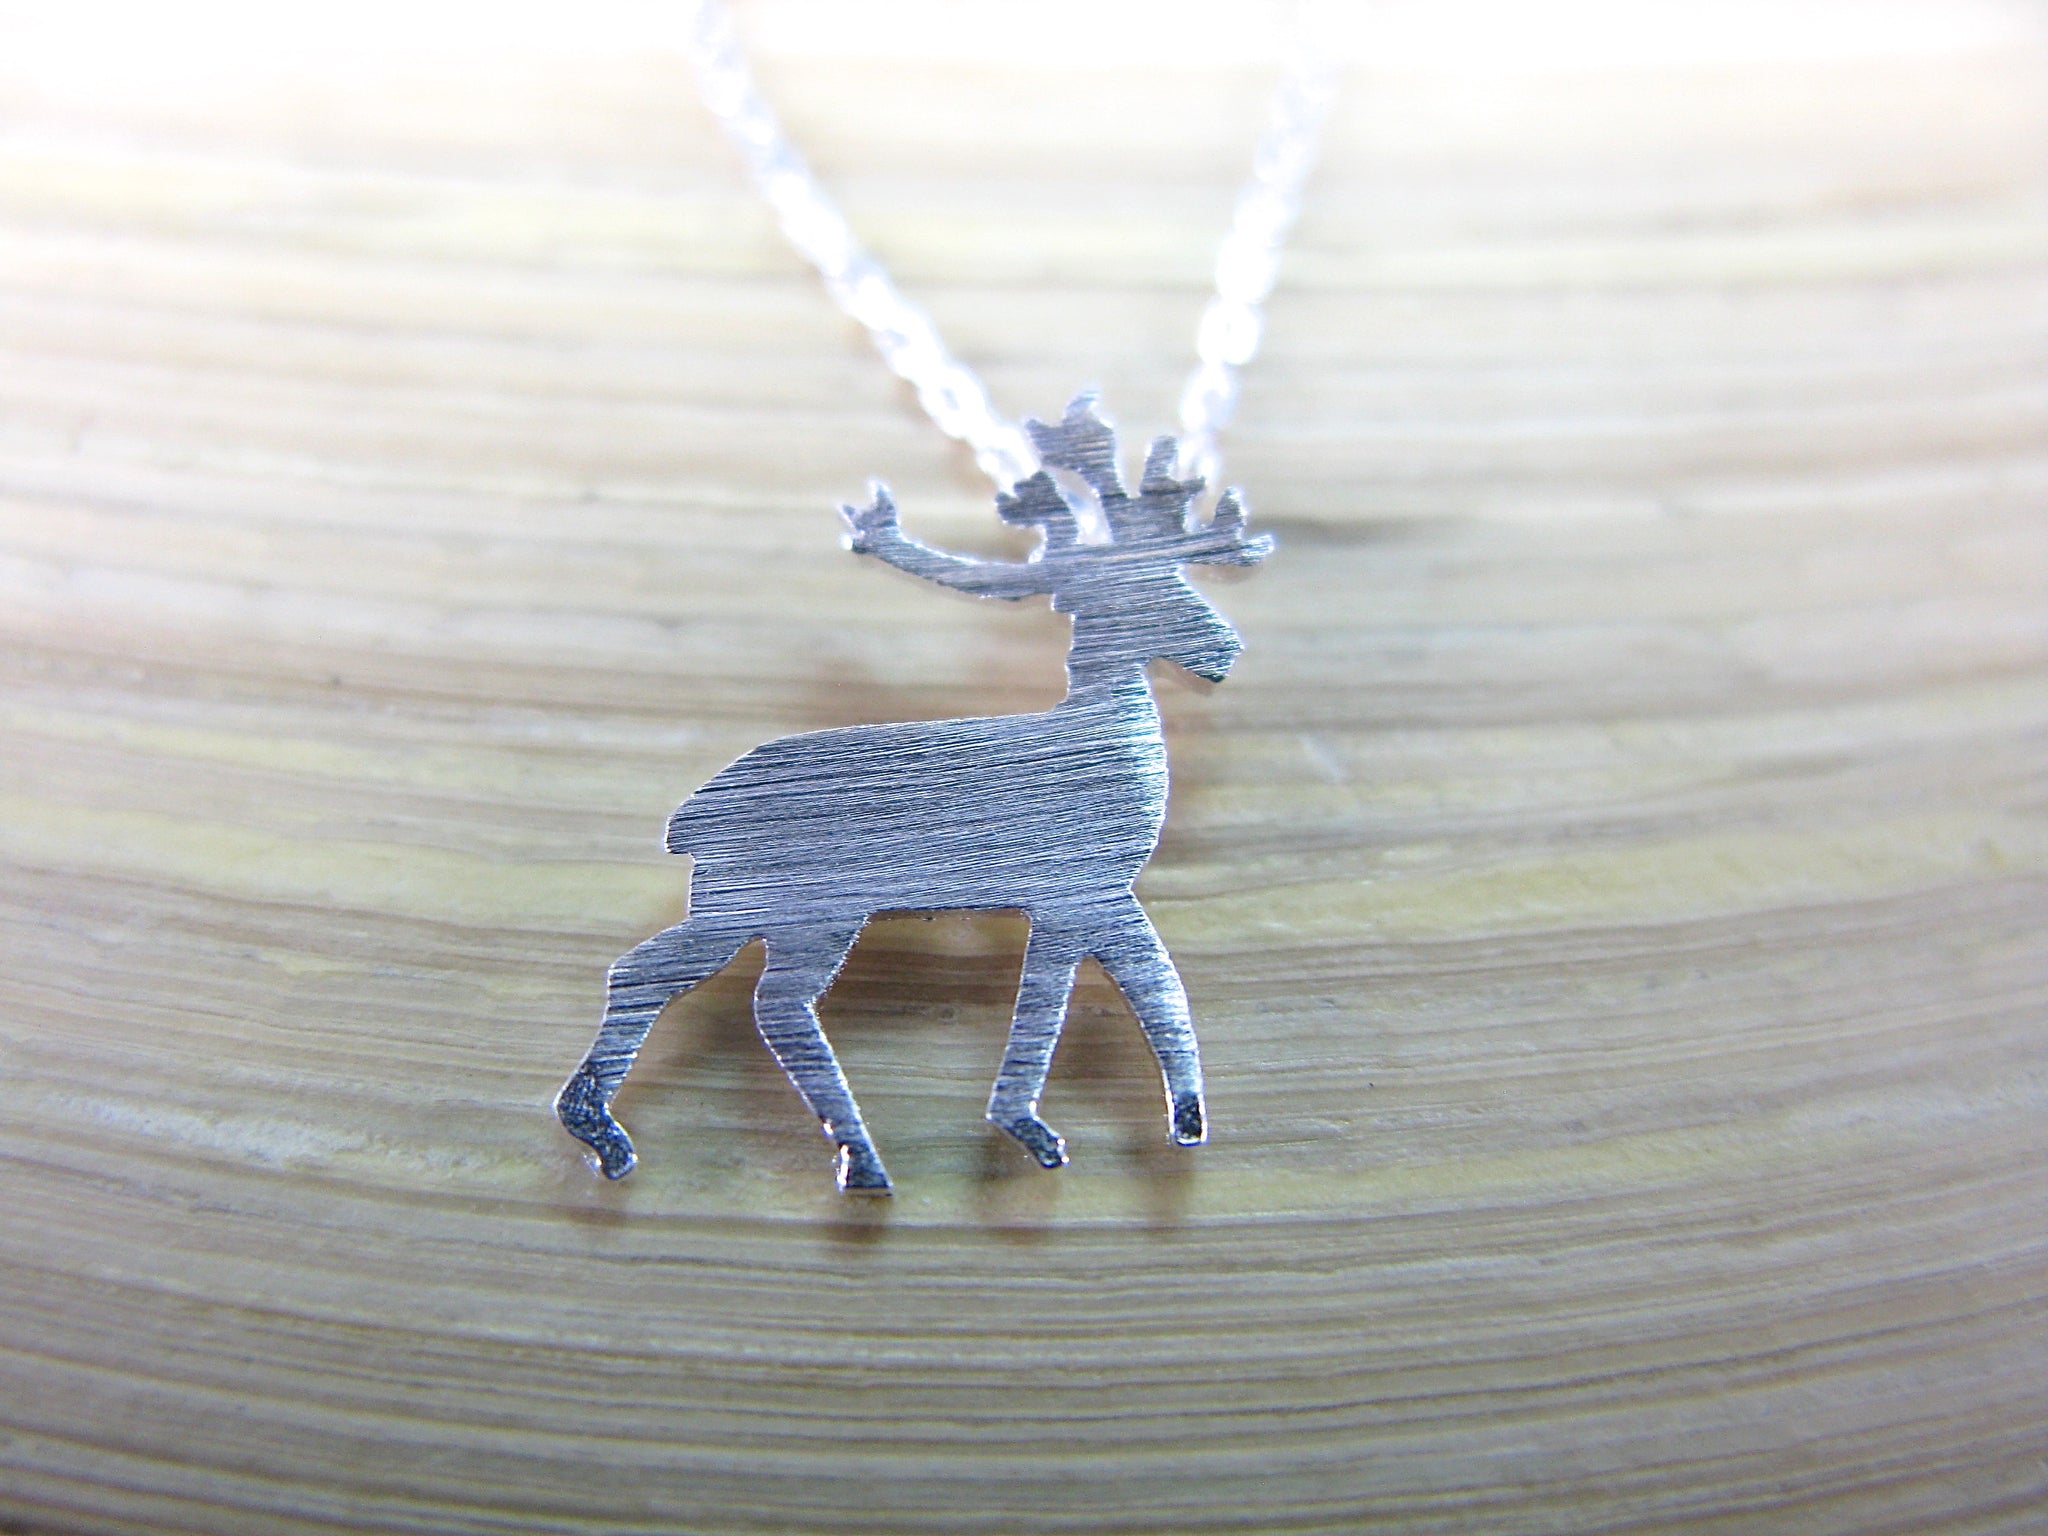 Deer Reindeer Pendant Necklace in 925 Sterling Silver